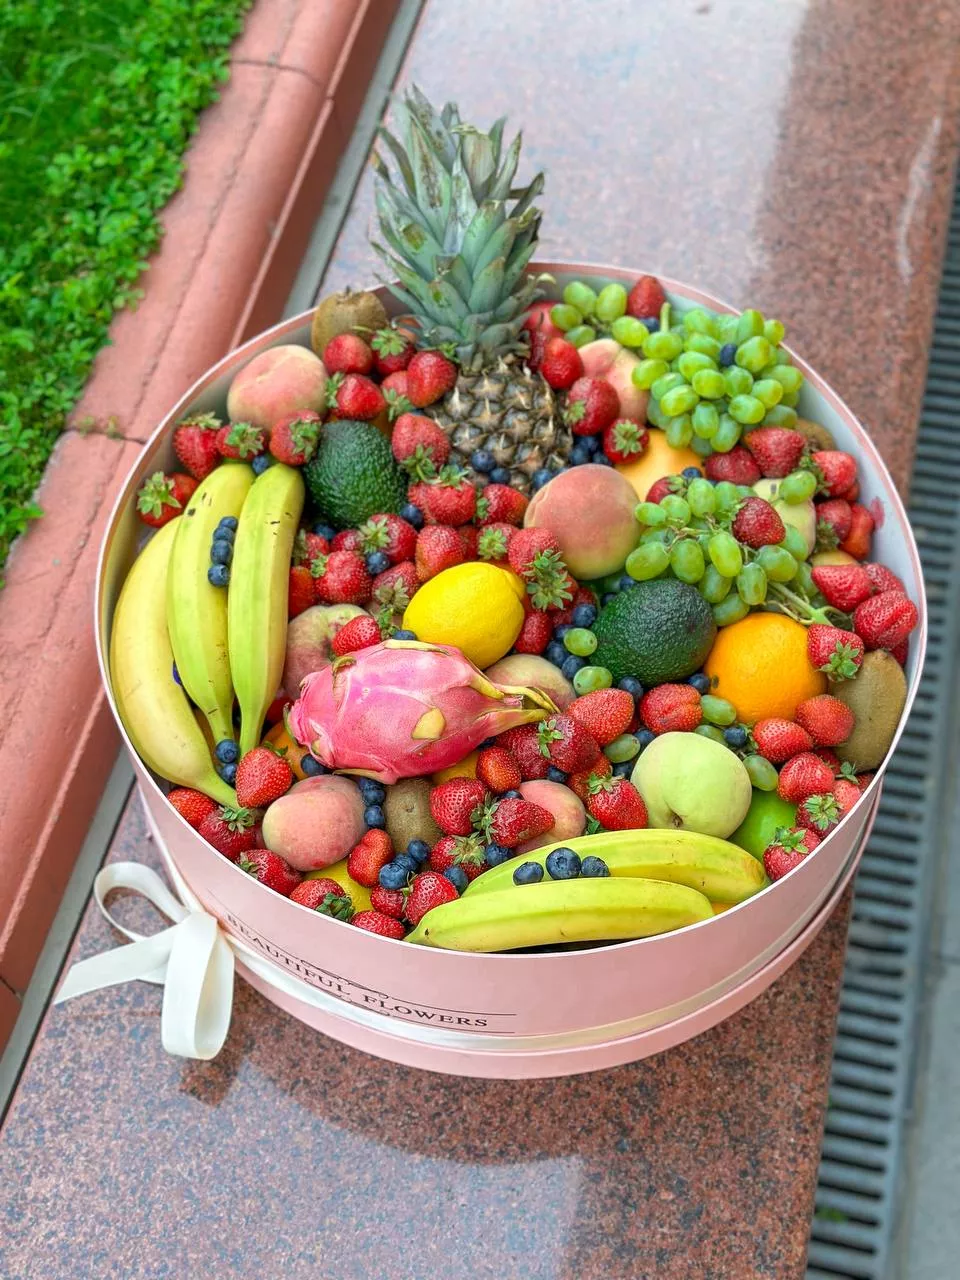 Фруктовая композиция "Fruitella" с тропическими фруктами и ягодами